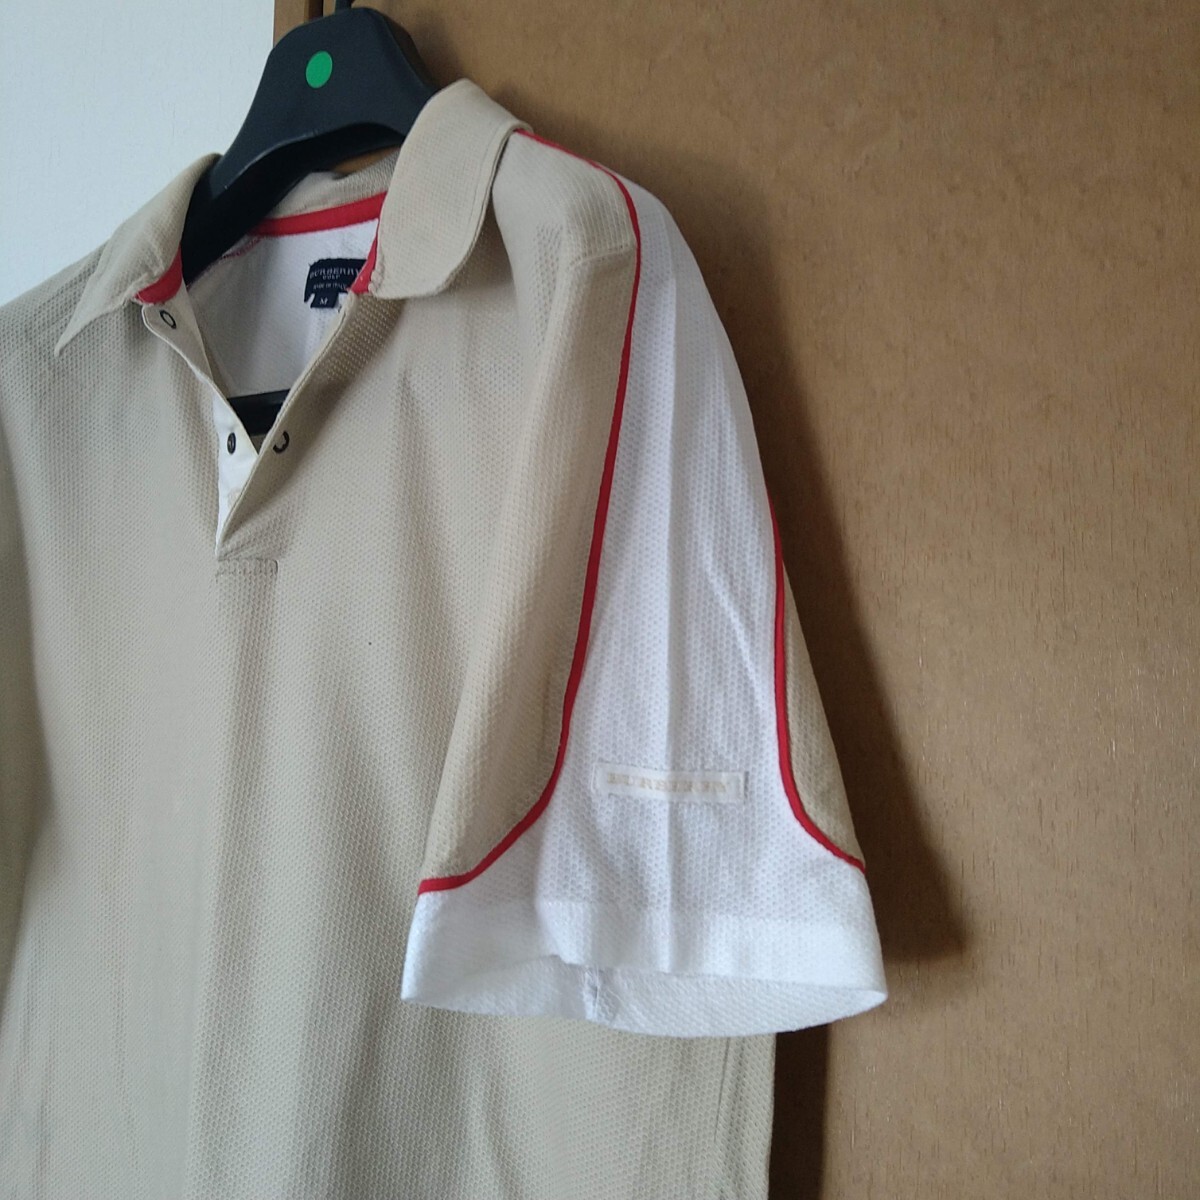  Burberry Golf рубашка-поло с коротким рукавом мужской M размер белый . изначальный шланг Mark #BURBERRY GOLF